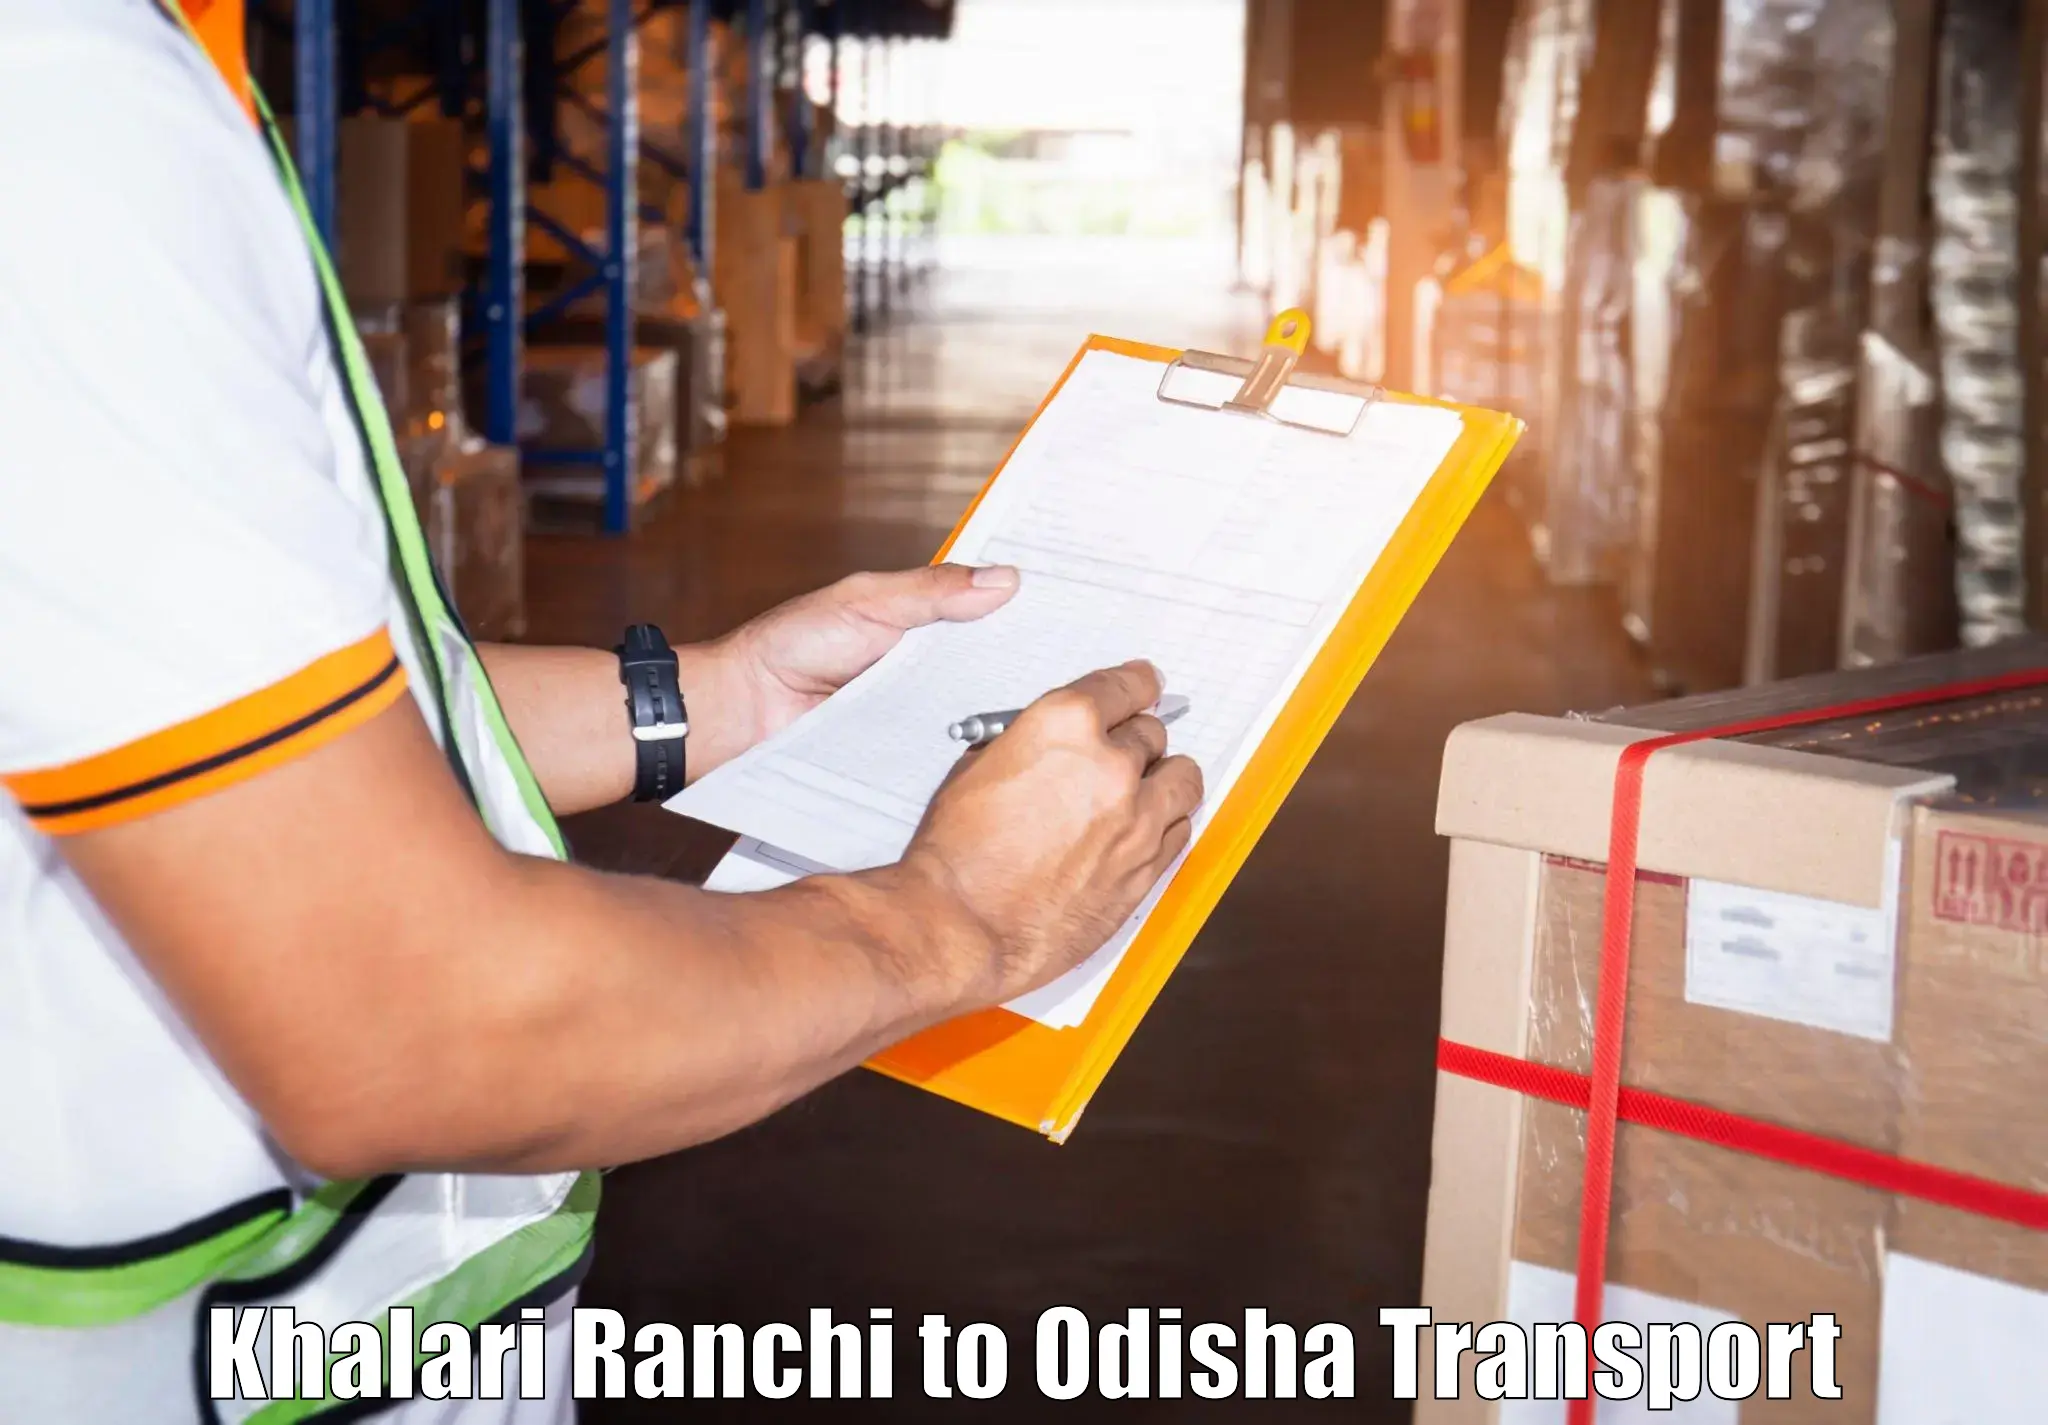 Truck transport companies in India Khalari Ranchi to Ghuntagadia